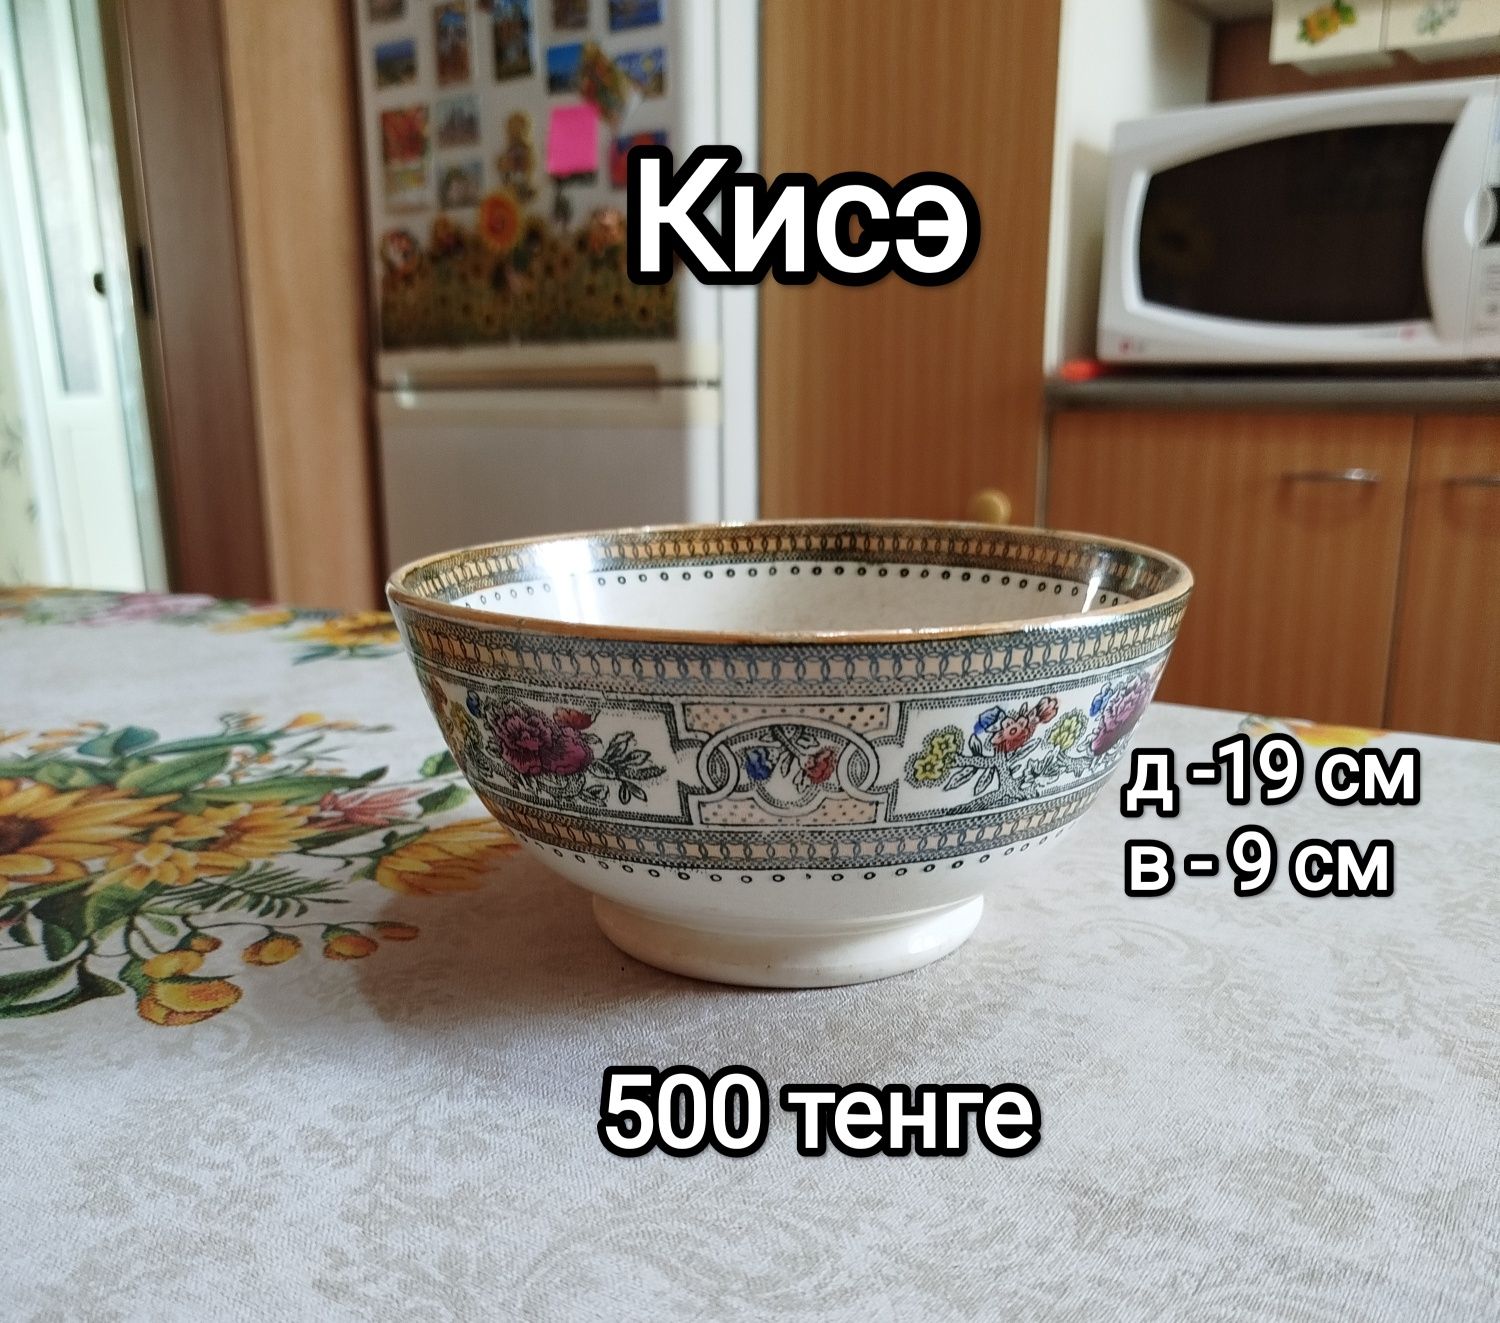 Посуда из советского периода